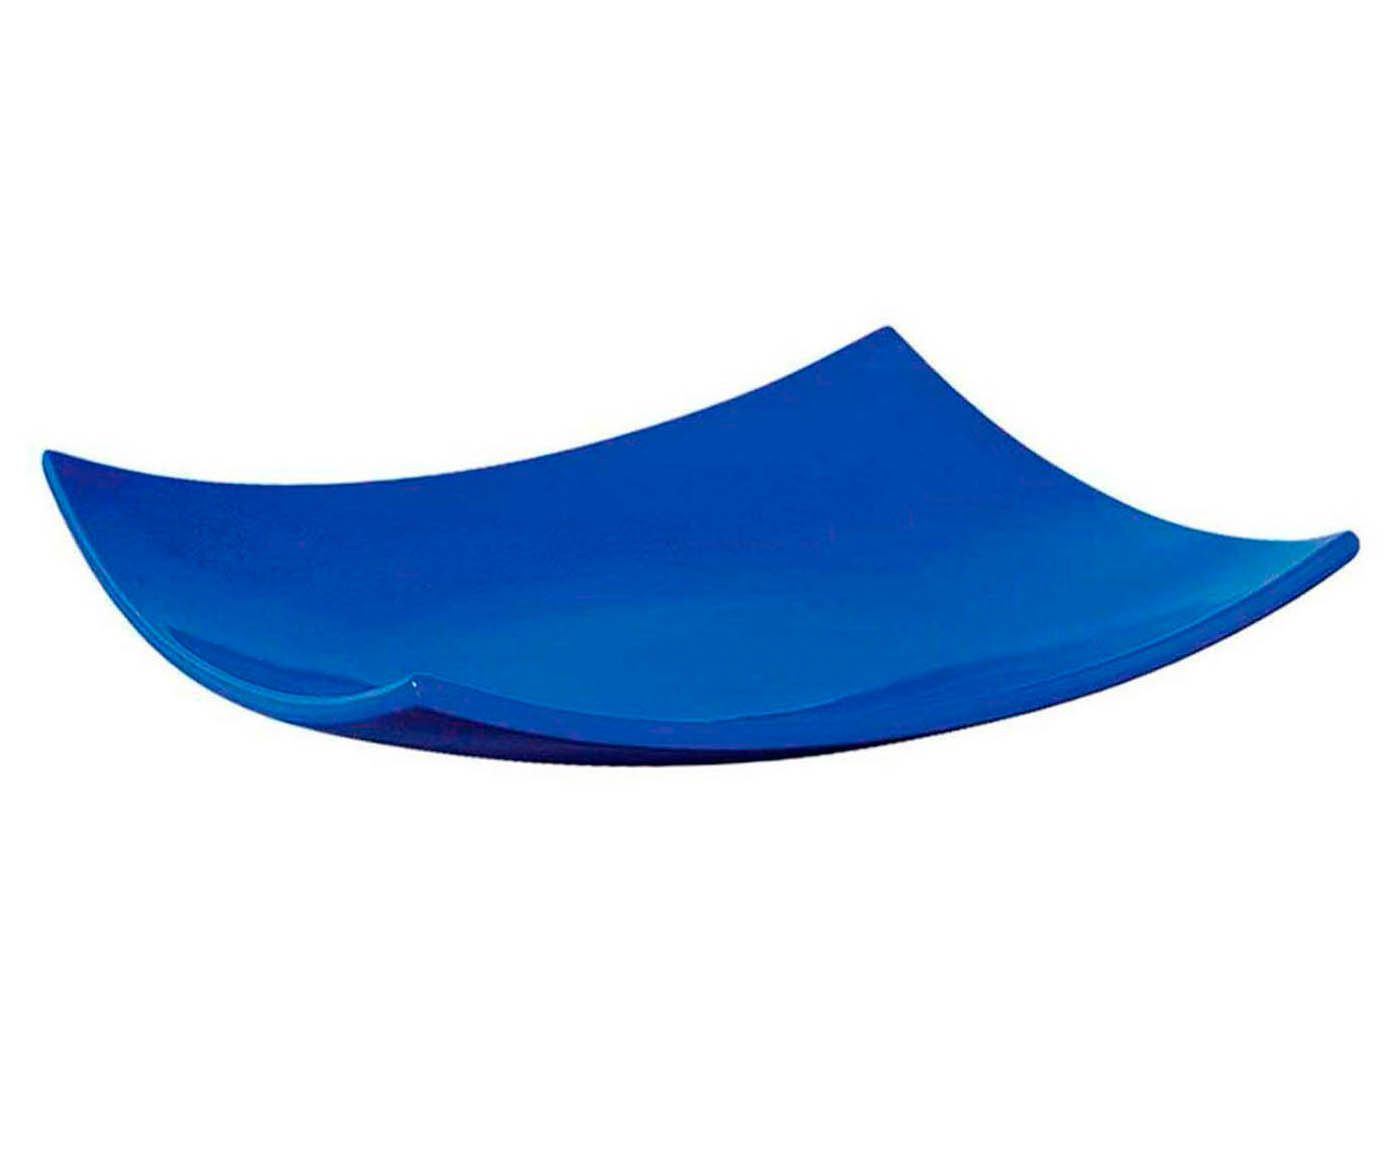 Centro de mesa mozart azul - 41cm | Westwing.com.br